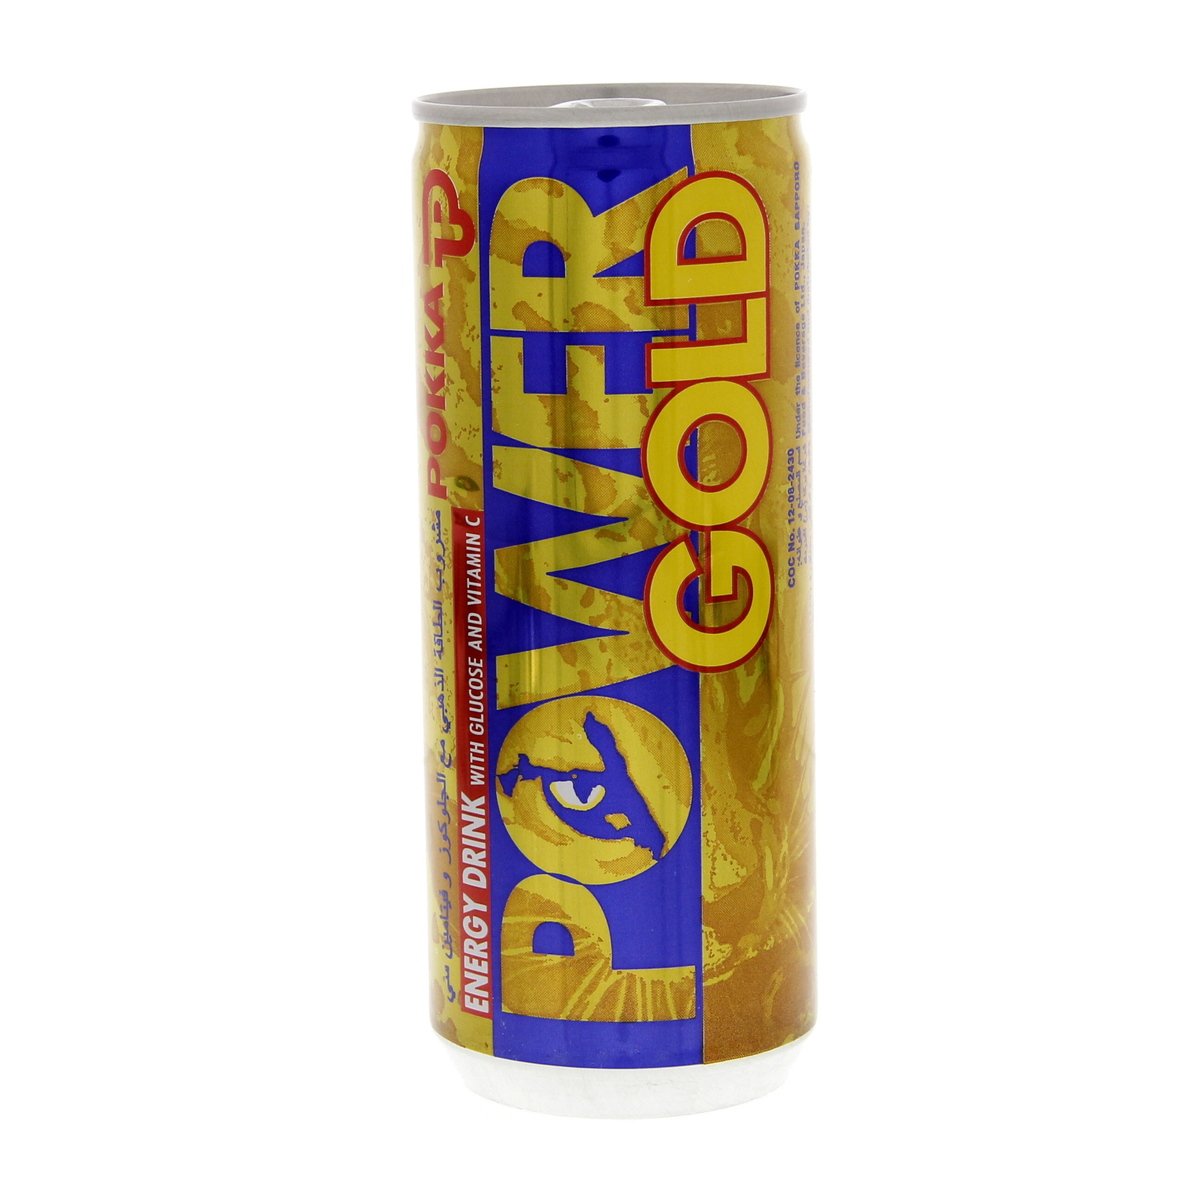 Pokka Power Gold Drink 6 x 240 ml